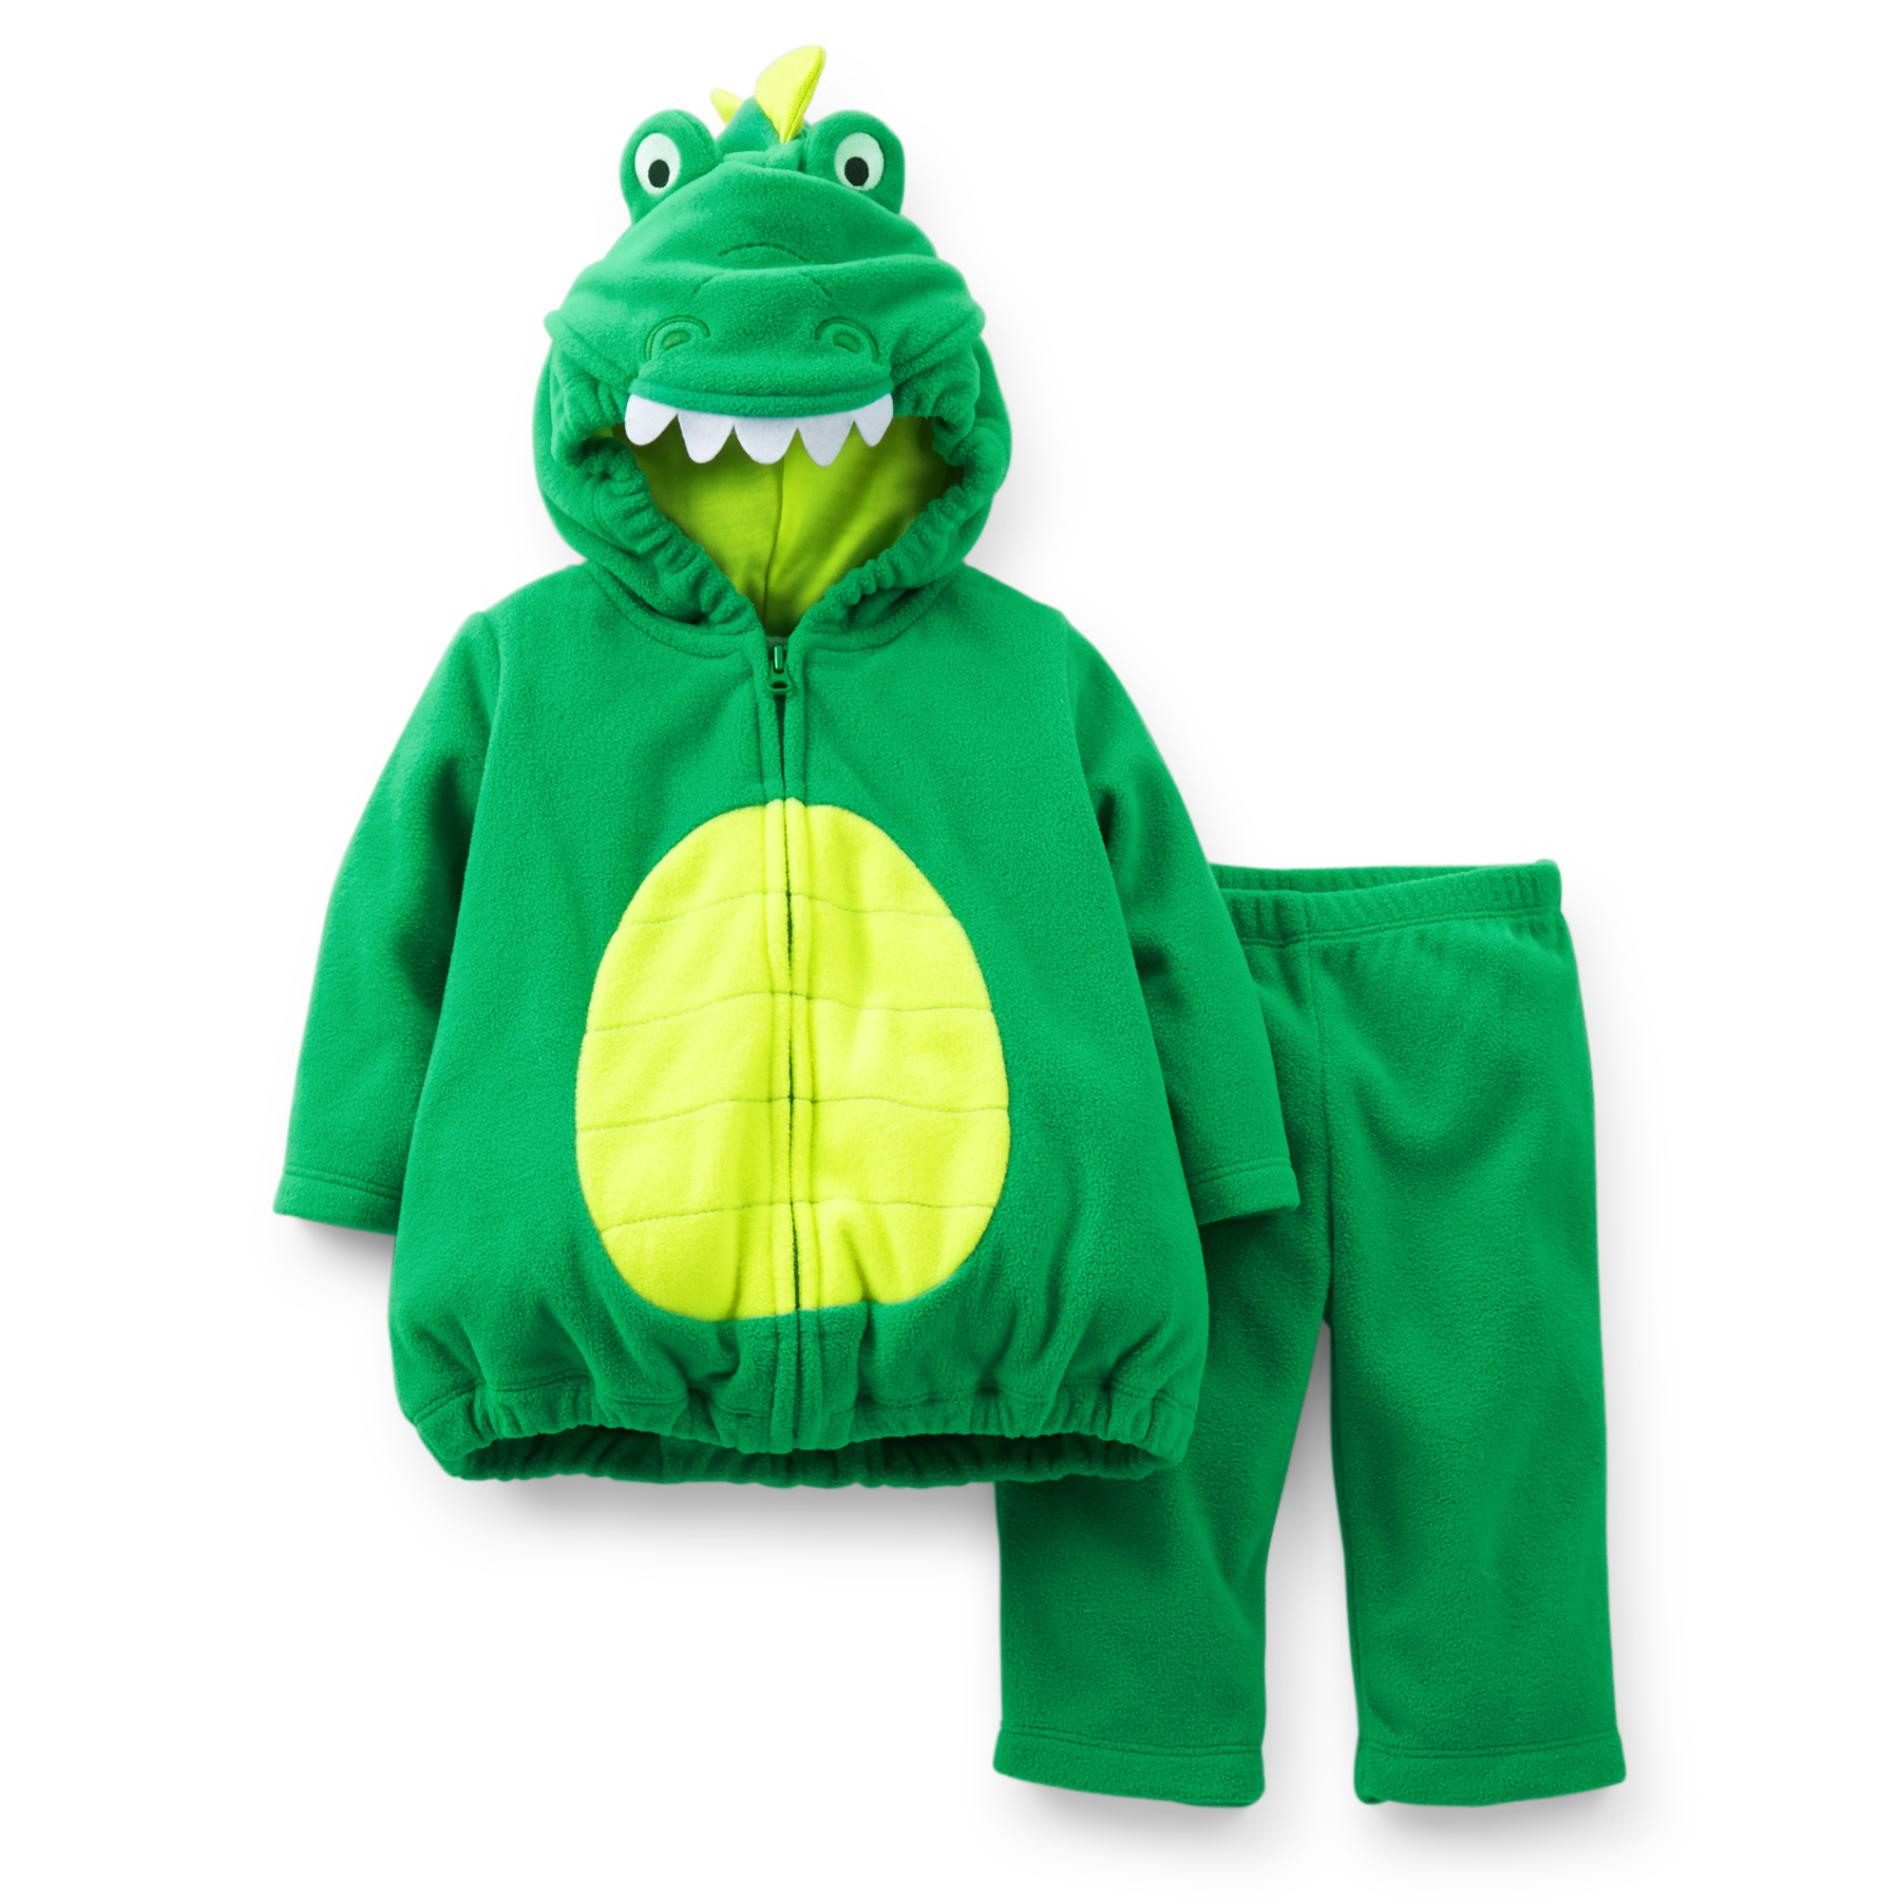 Carter's Infant Boy's Alligator Costume